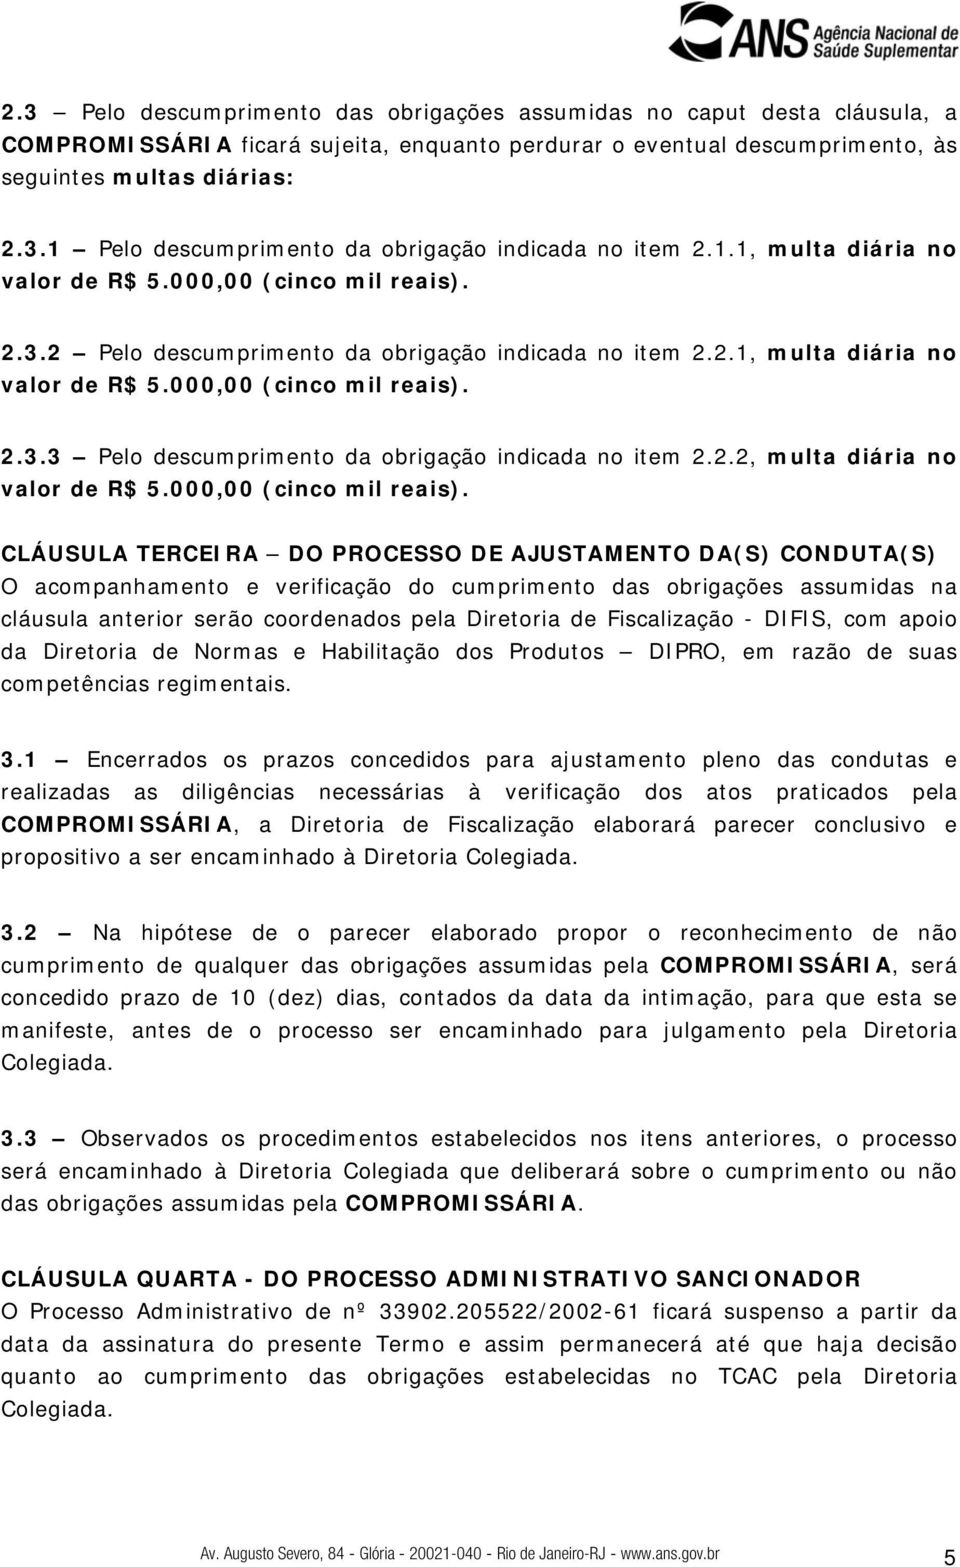 2.2, multa diária no valor de R$ 5.000,00 (cinco mil reais).